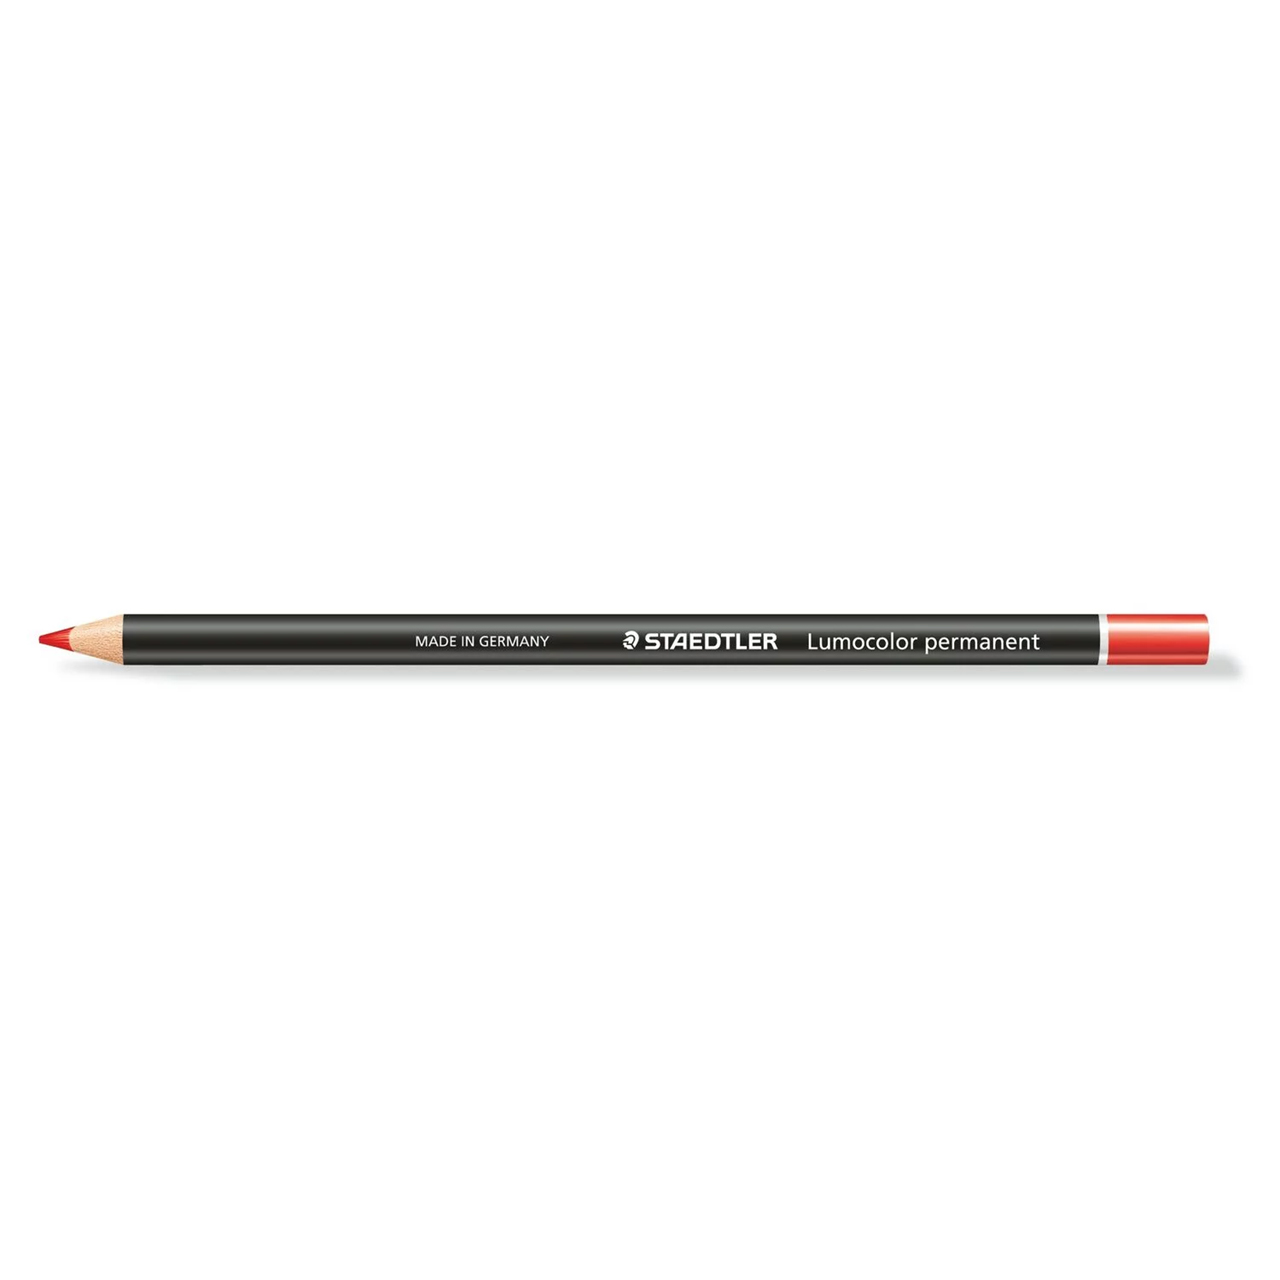 Grease pencil waterproof red